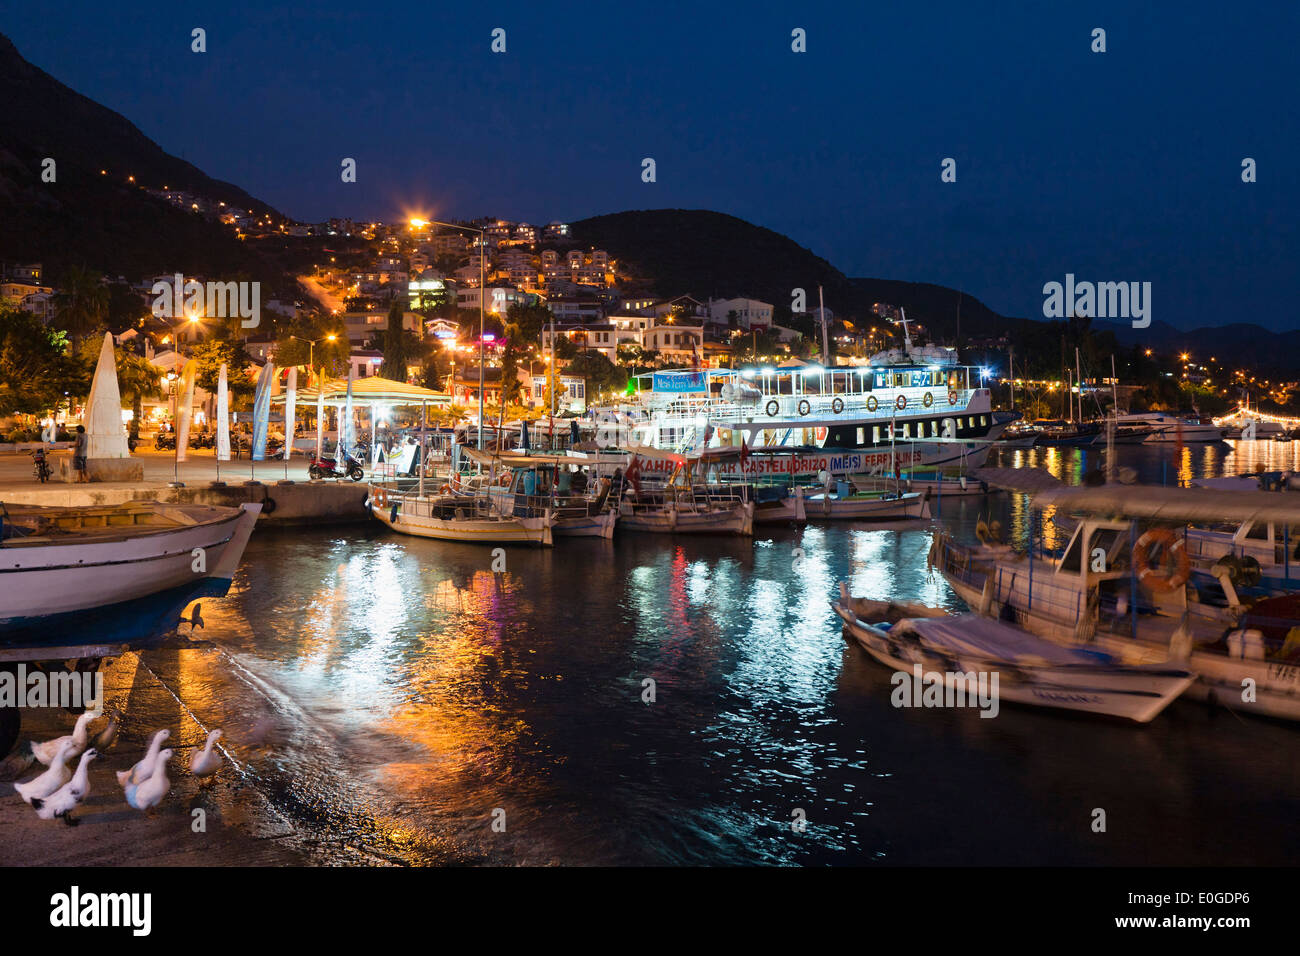 Porto di Kas di notte, lycian coast, Lycia, Mare mediterraneo, Turchia, Asia Foto Stock